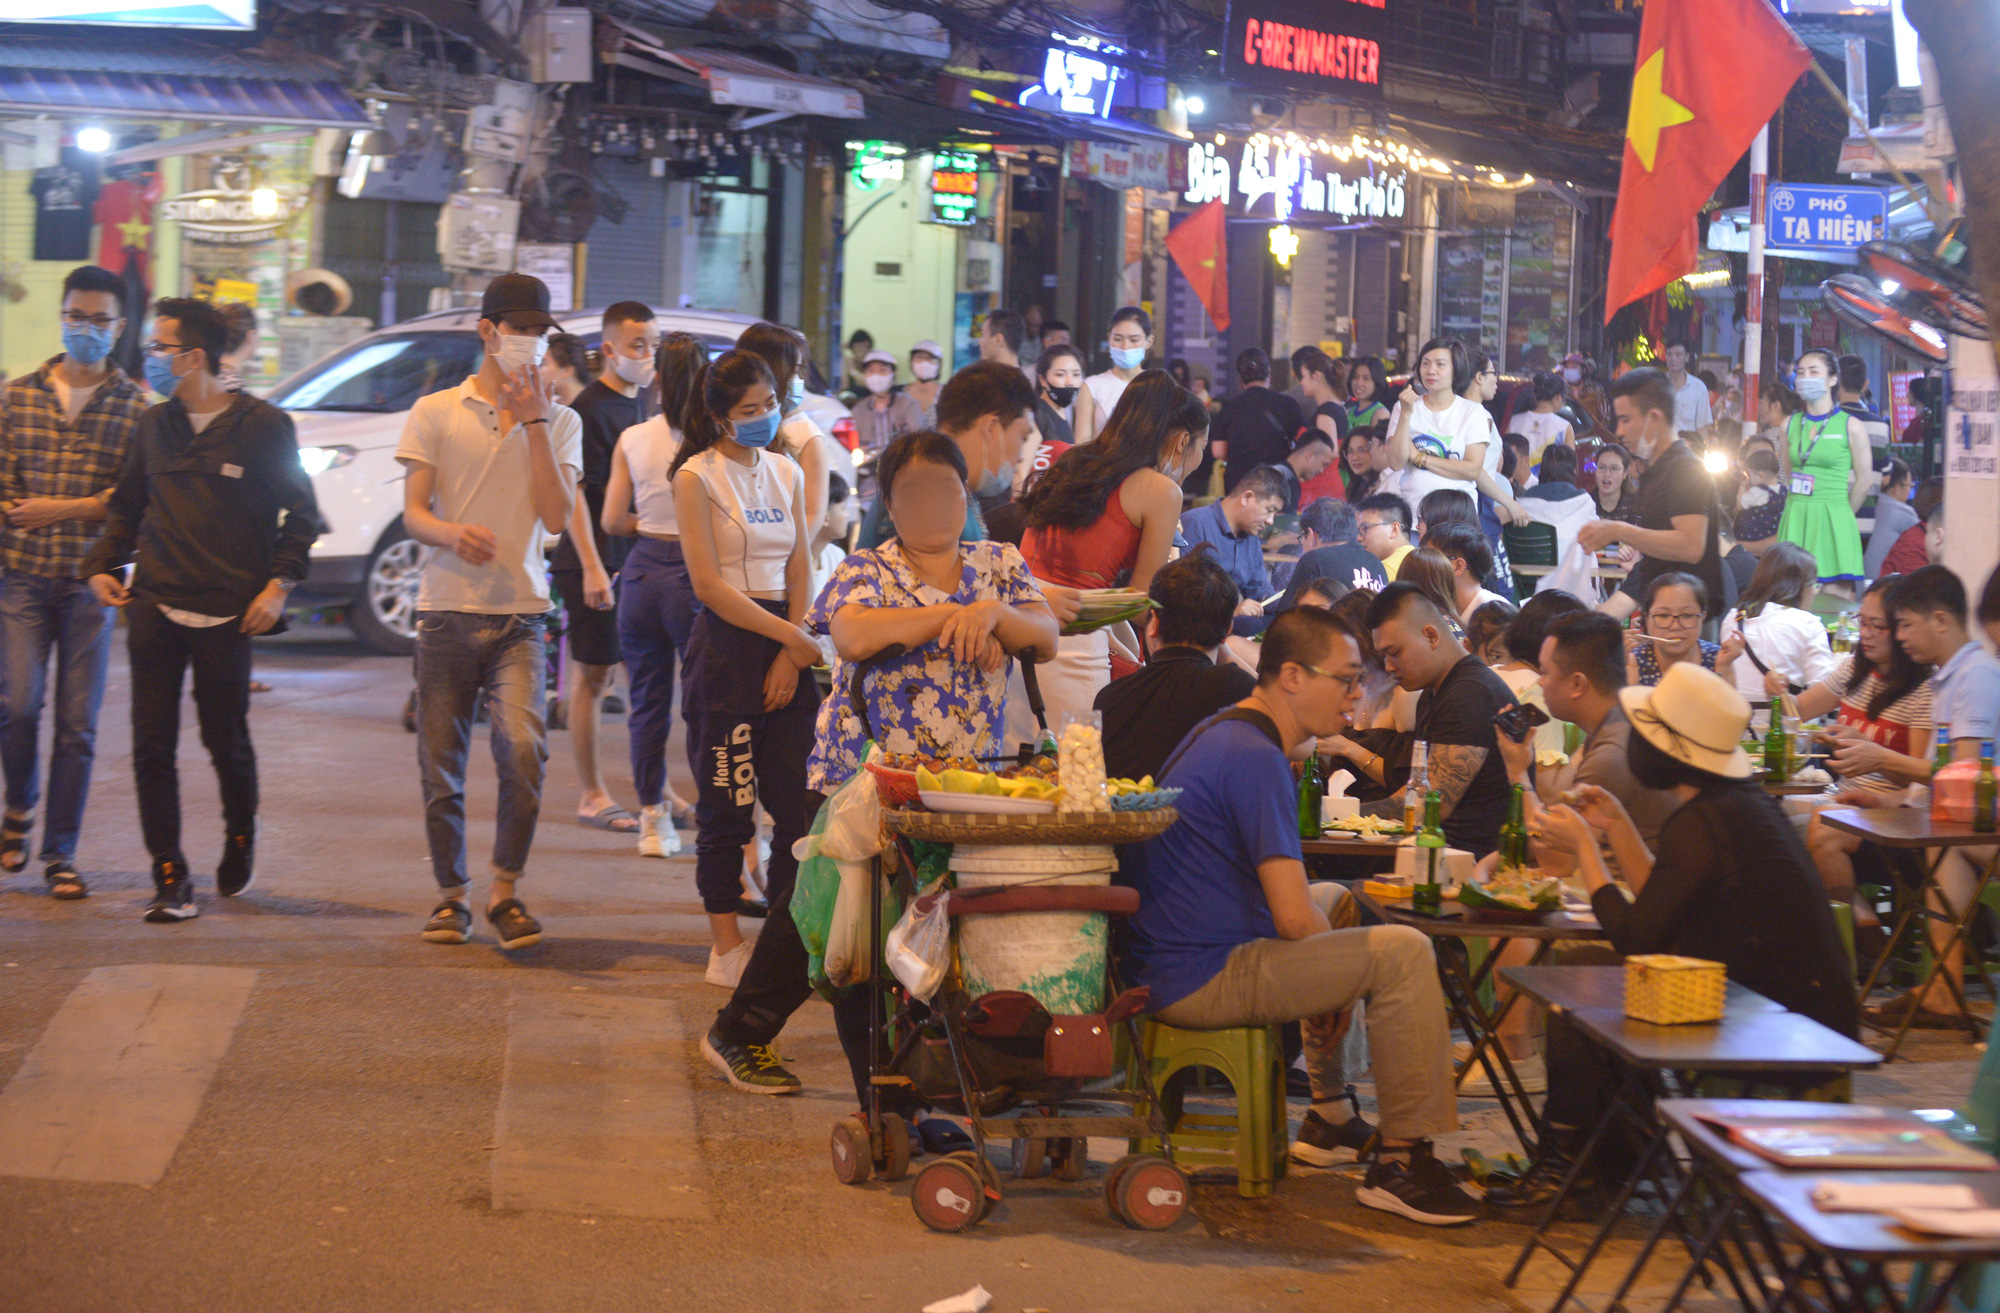 Bất chấp dịch Covid-19, phố Tạ Hiện tấp nập khách lúc nửa đêm, nhiều người &quot;quên&quot; đeo khẩu trang - Ảnh 9.